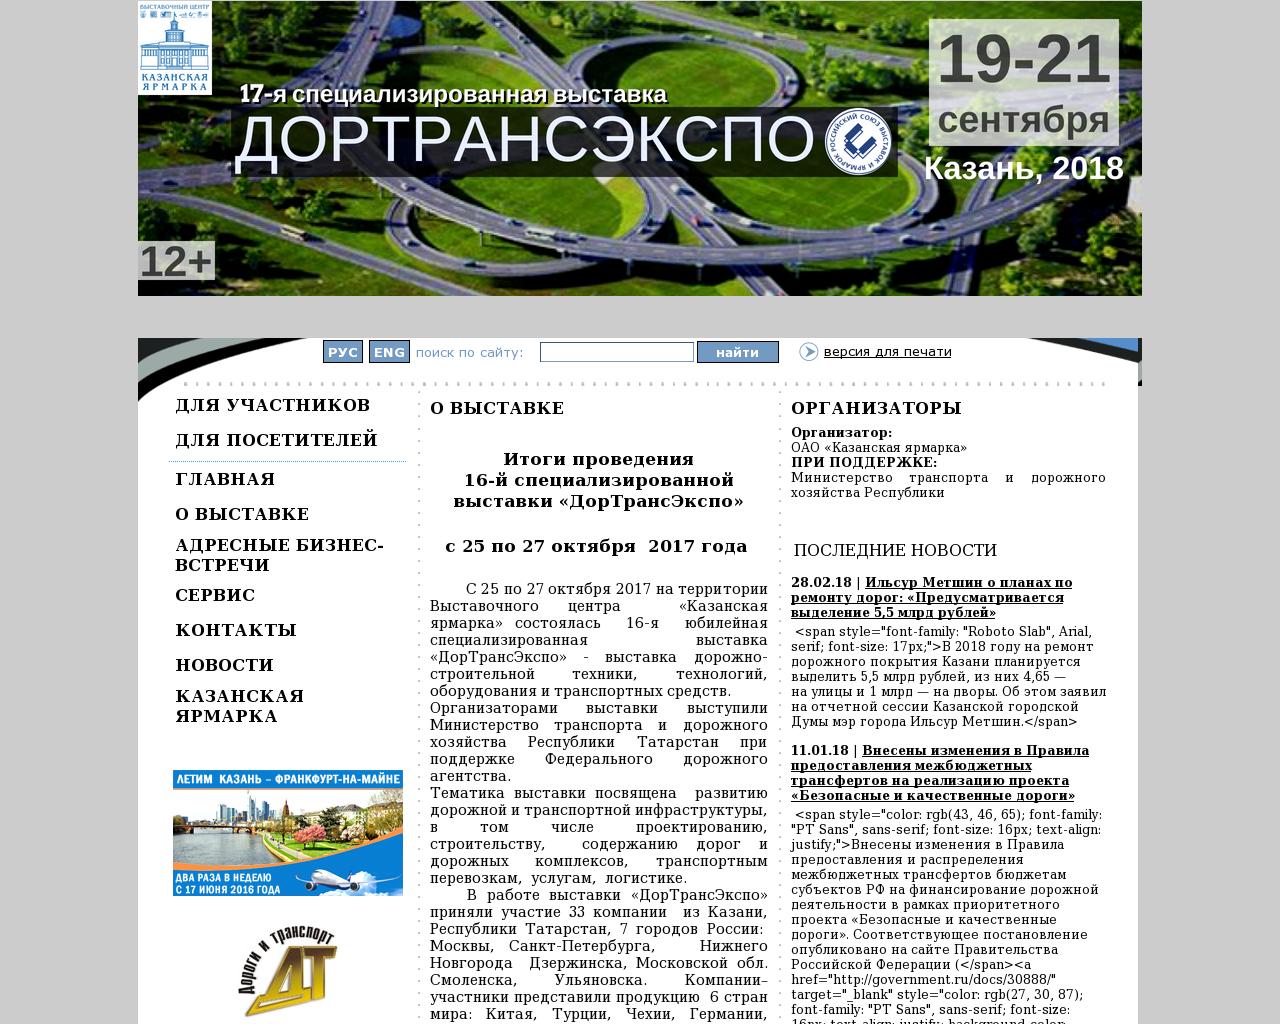 Изображение сайта dortransexpo.ru в разрешении 1280x1024